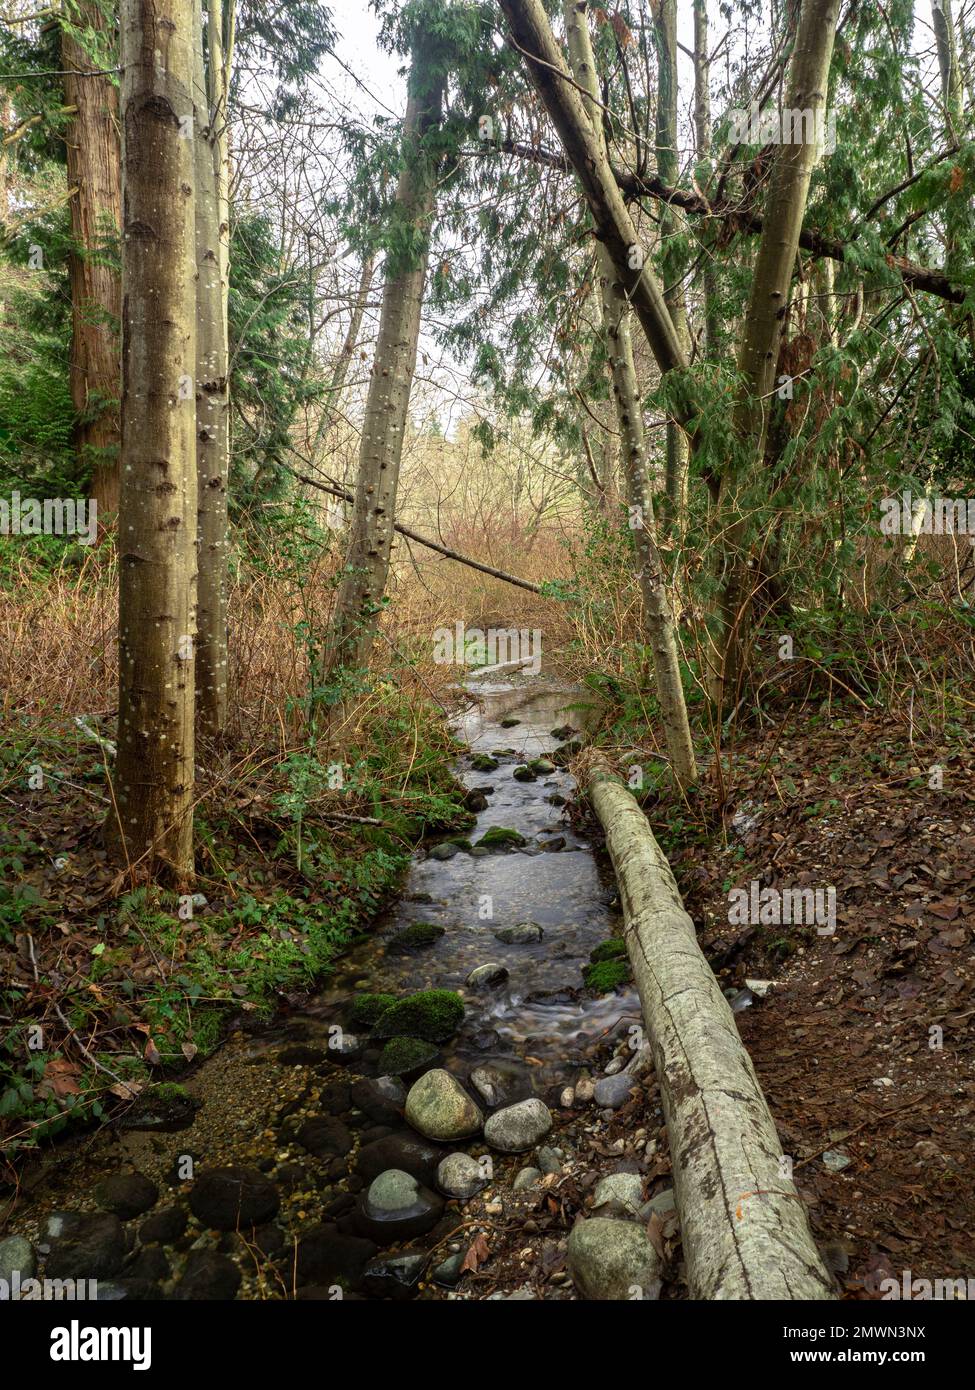 Un tranquilo y claro arroyo alimentado por un manantial en Watershed Park, Columbia Británica, Canadá, durante el invierno Foto de stock